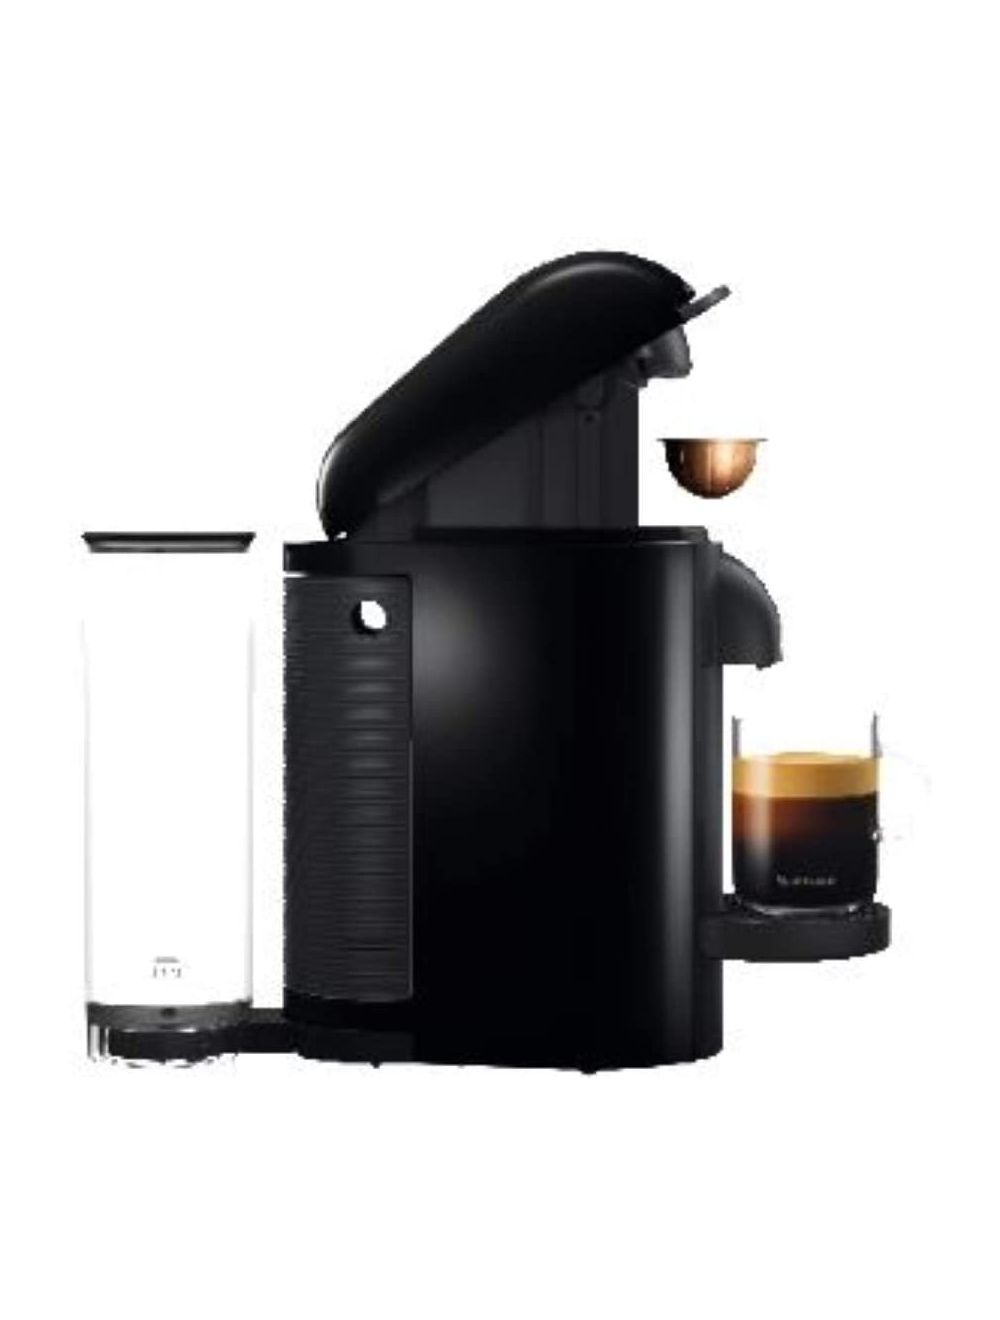 NESPRESSO Vertuo Black Coffee Machine-GCB2-GB-BK-NE1:Buy Online At Best Price In UAE: Kitchen Souq